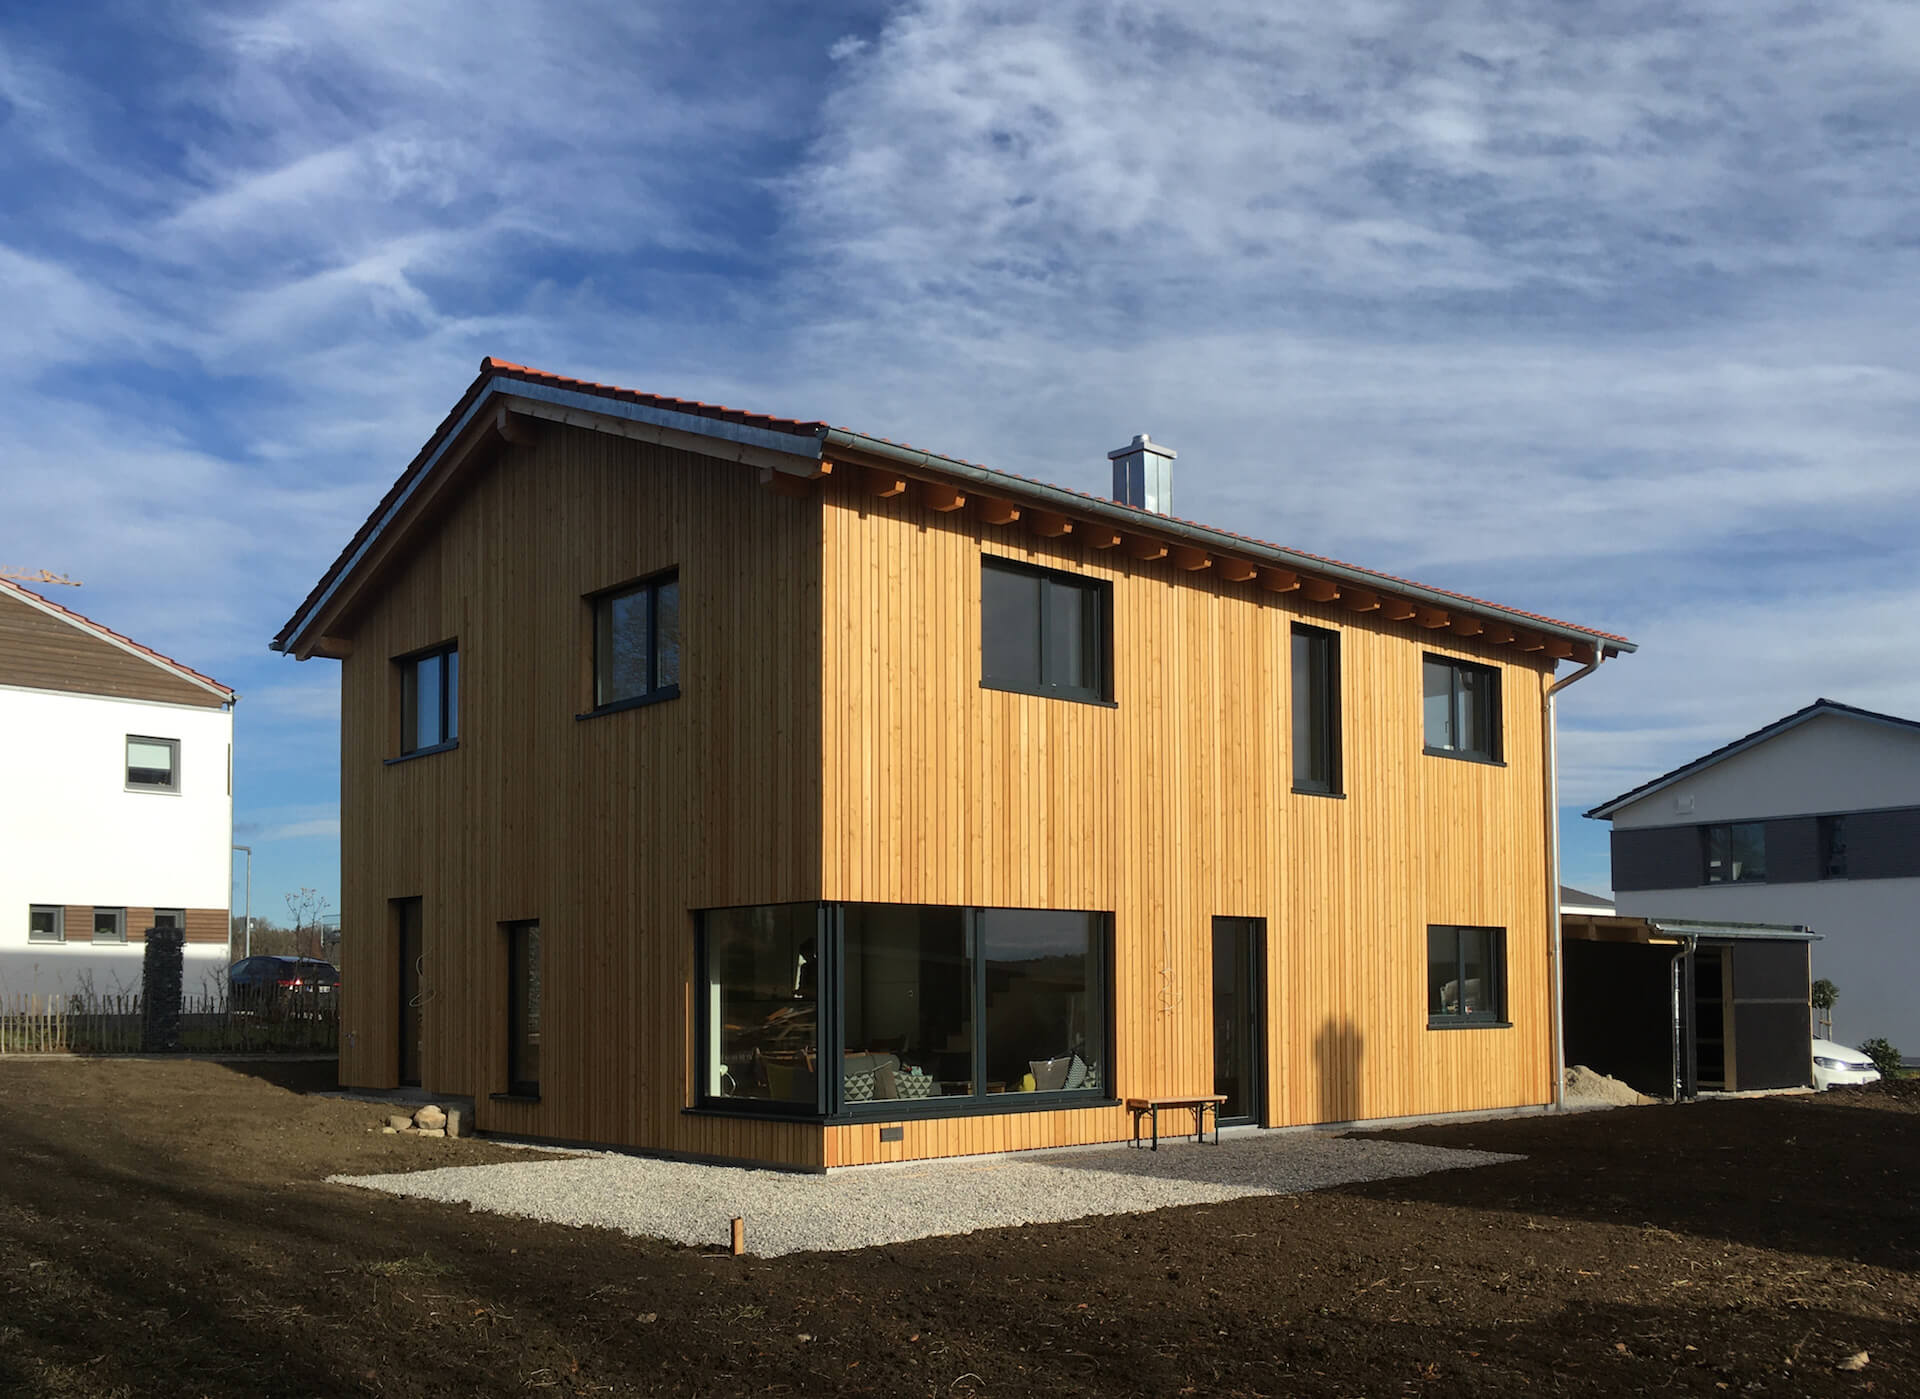 Entwurf Werkplanung und Bauleitung für Neubau eines Einfamilienhauses in Hybridbauweise in Finning am Ammersee